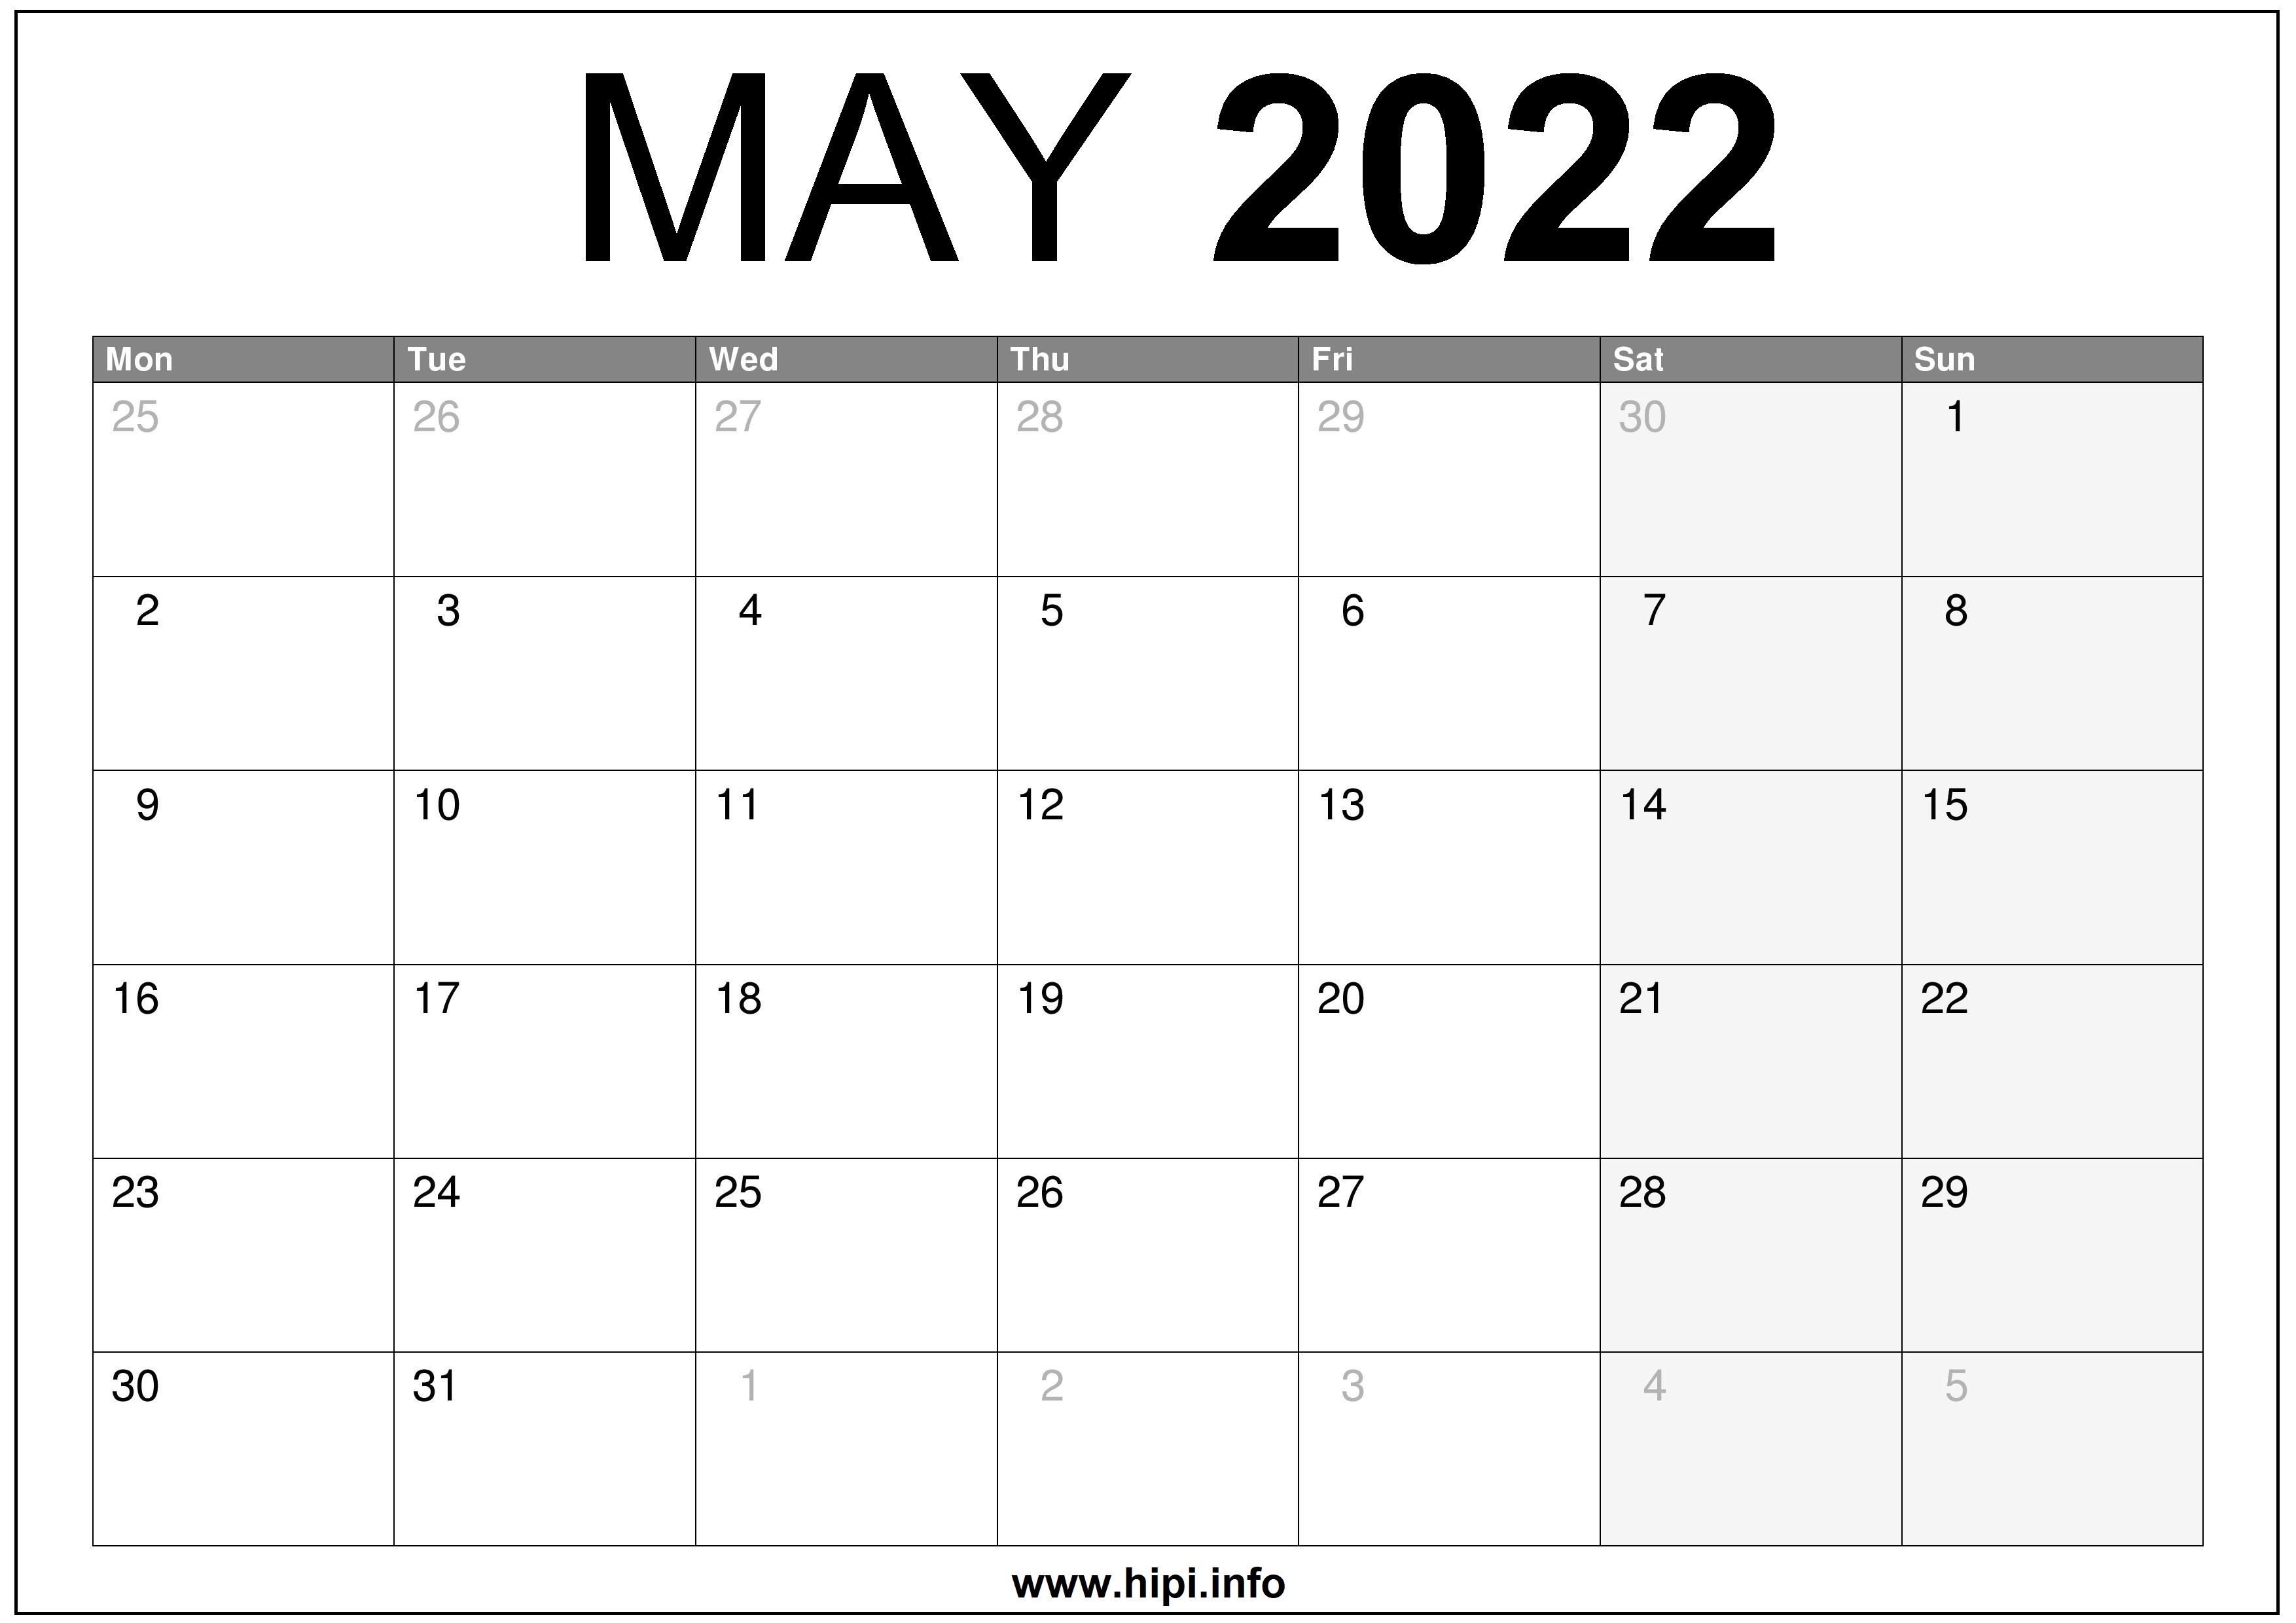 lego hooters april calendar Psu Fall 2022 Calendar calendar pdf free